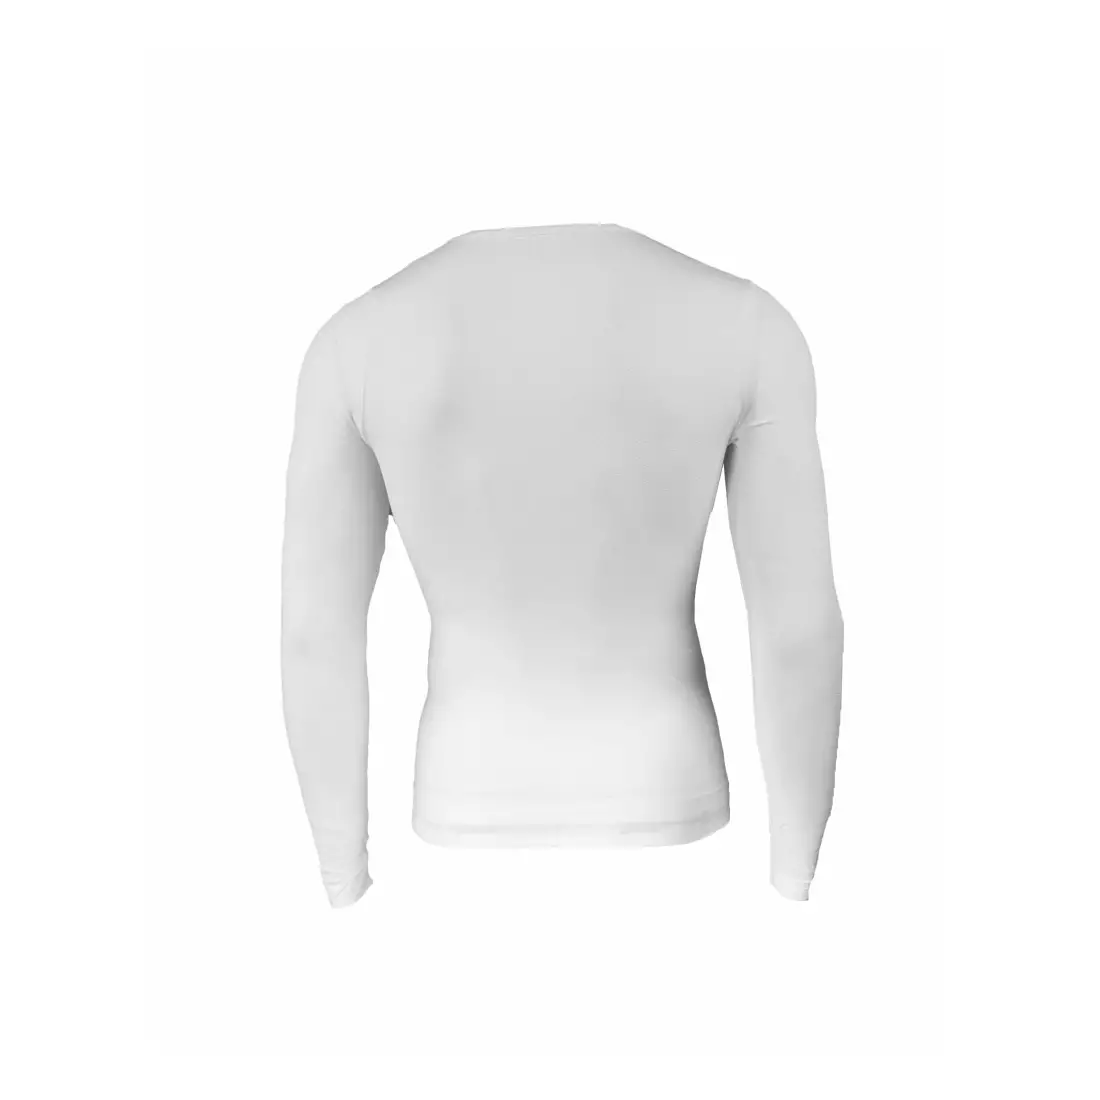 ROGELLI CHASE - 070.005 - termoprádlo - pánské triko s dlouhým rukávem - barva: Bílá